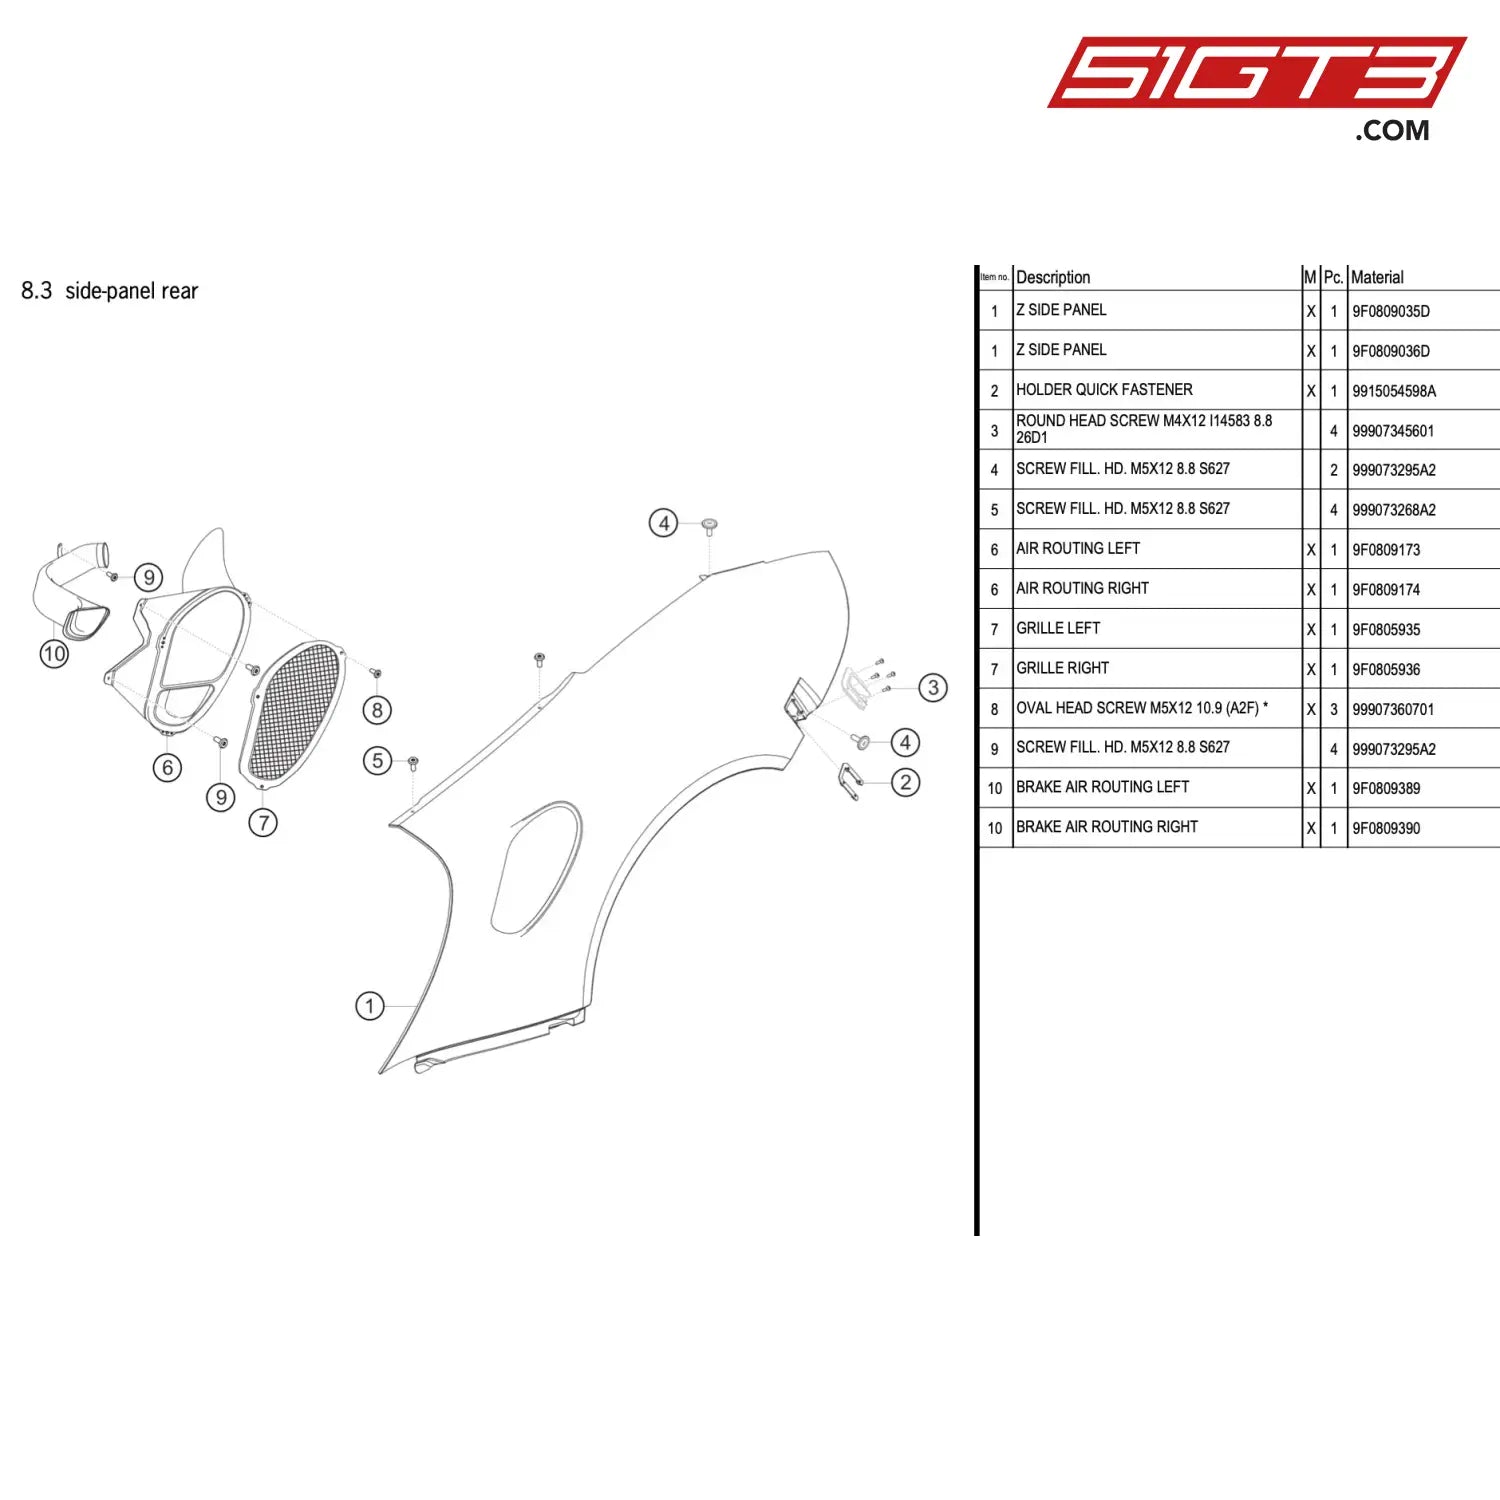 Oval Head Screw M5X12 10.9 (A2F) * - 99907360701 [Porsche 911 Gt3 R Type 991 (Gen 2)] Side-Panel